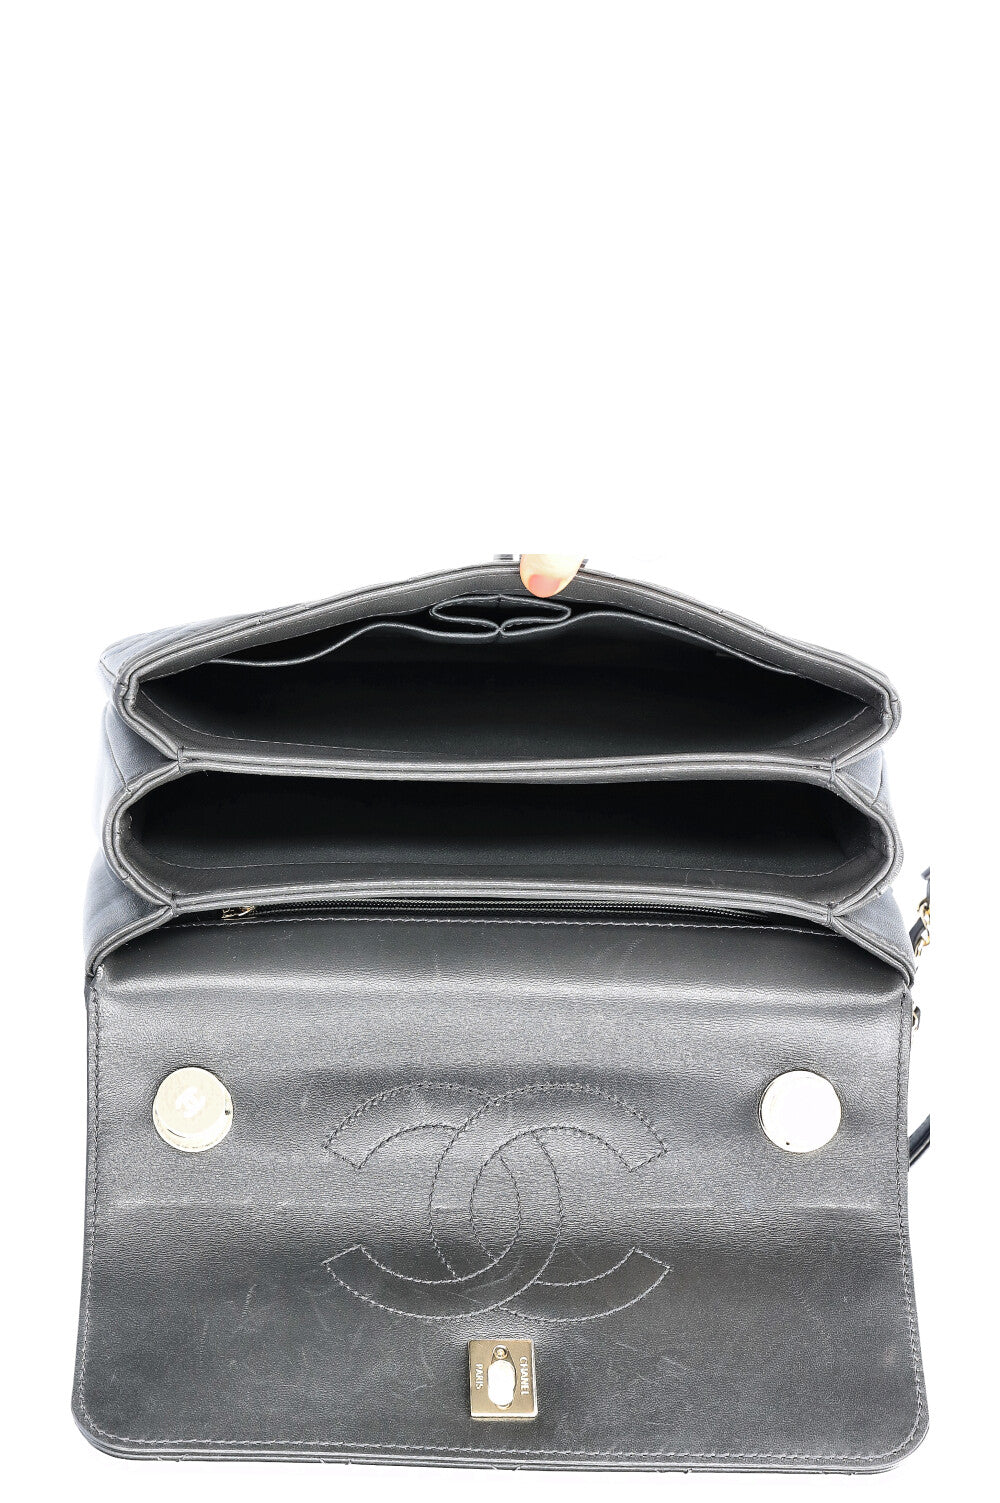 CHANEL Trendy CC Top Handle Bag Grey